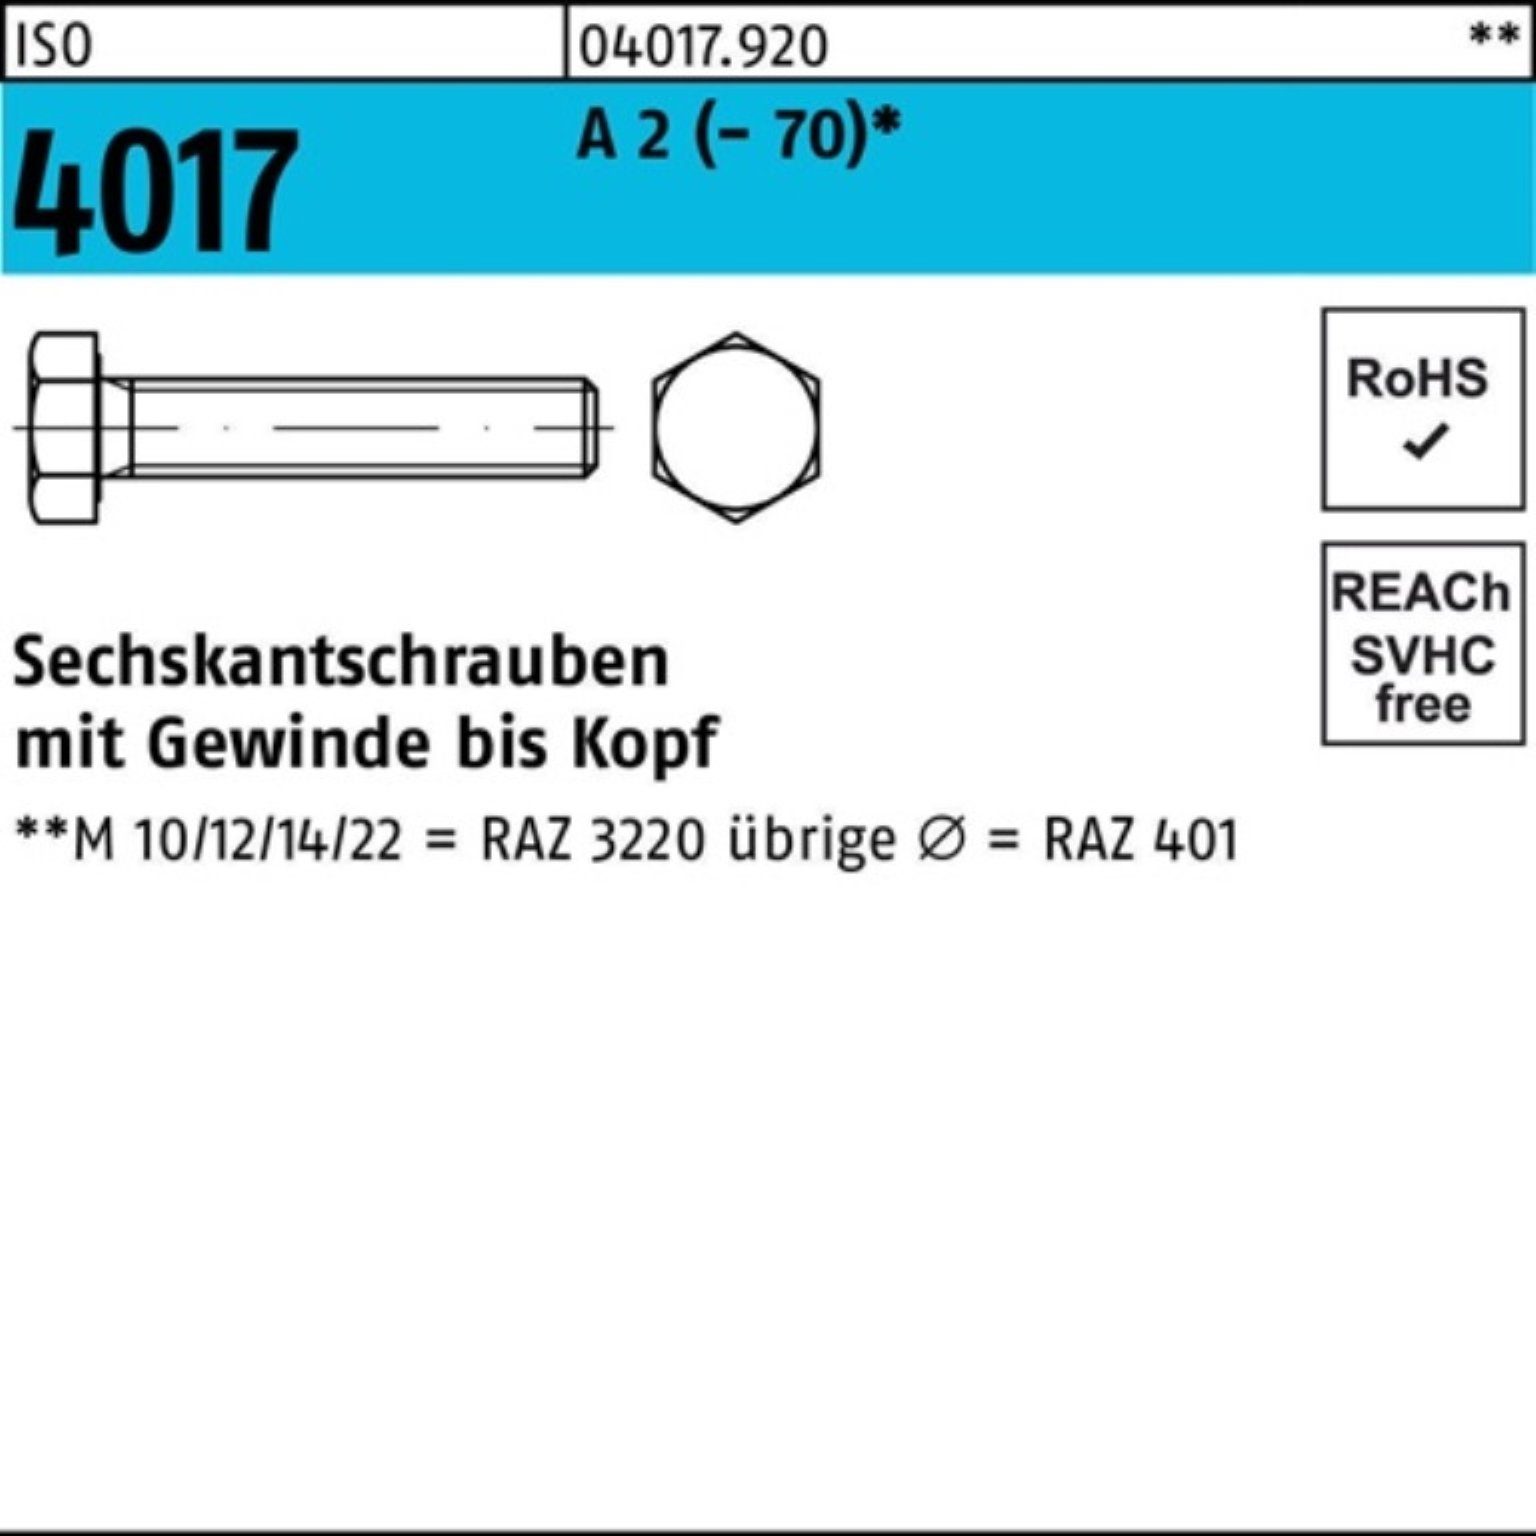 Pack VG (70) ISO Sechskantschraube Sechskantschraube A Stück 60 4017 100 Bufab 2 100er M4x